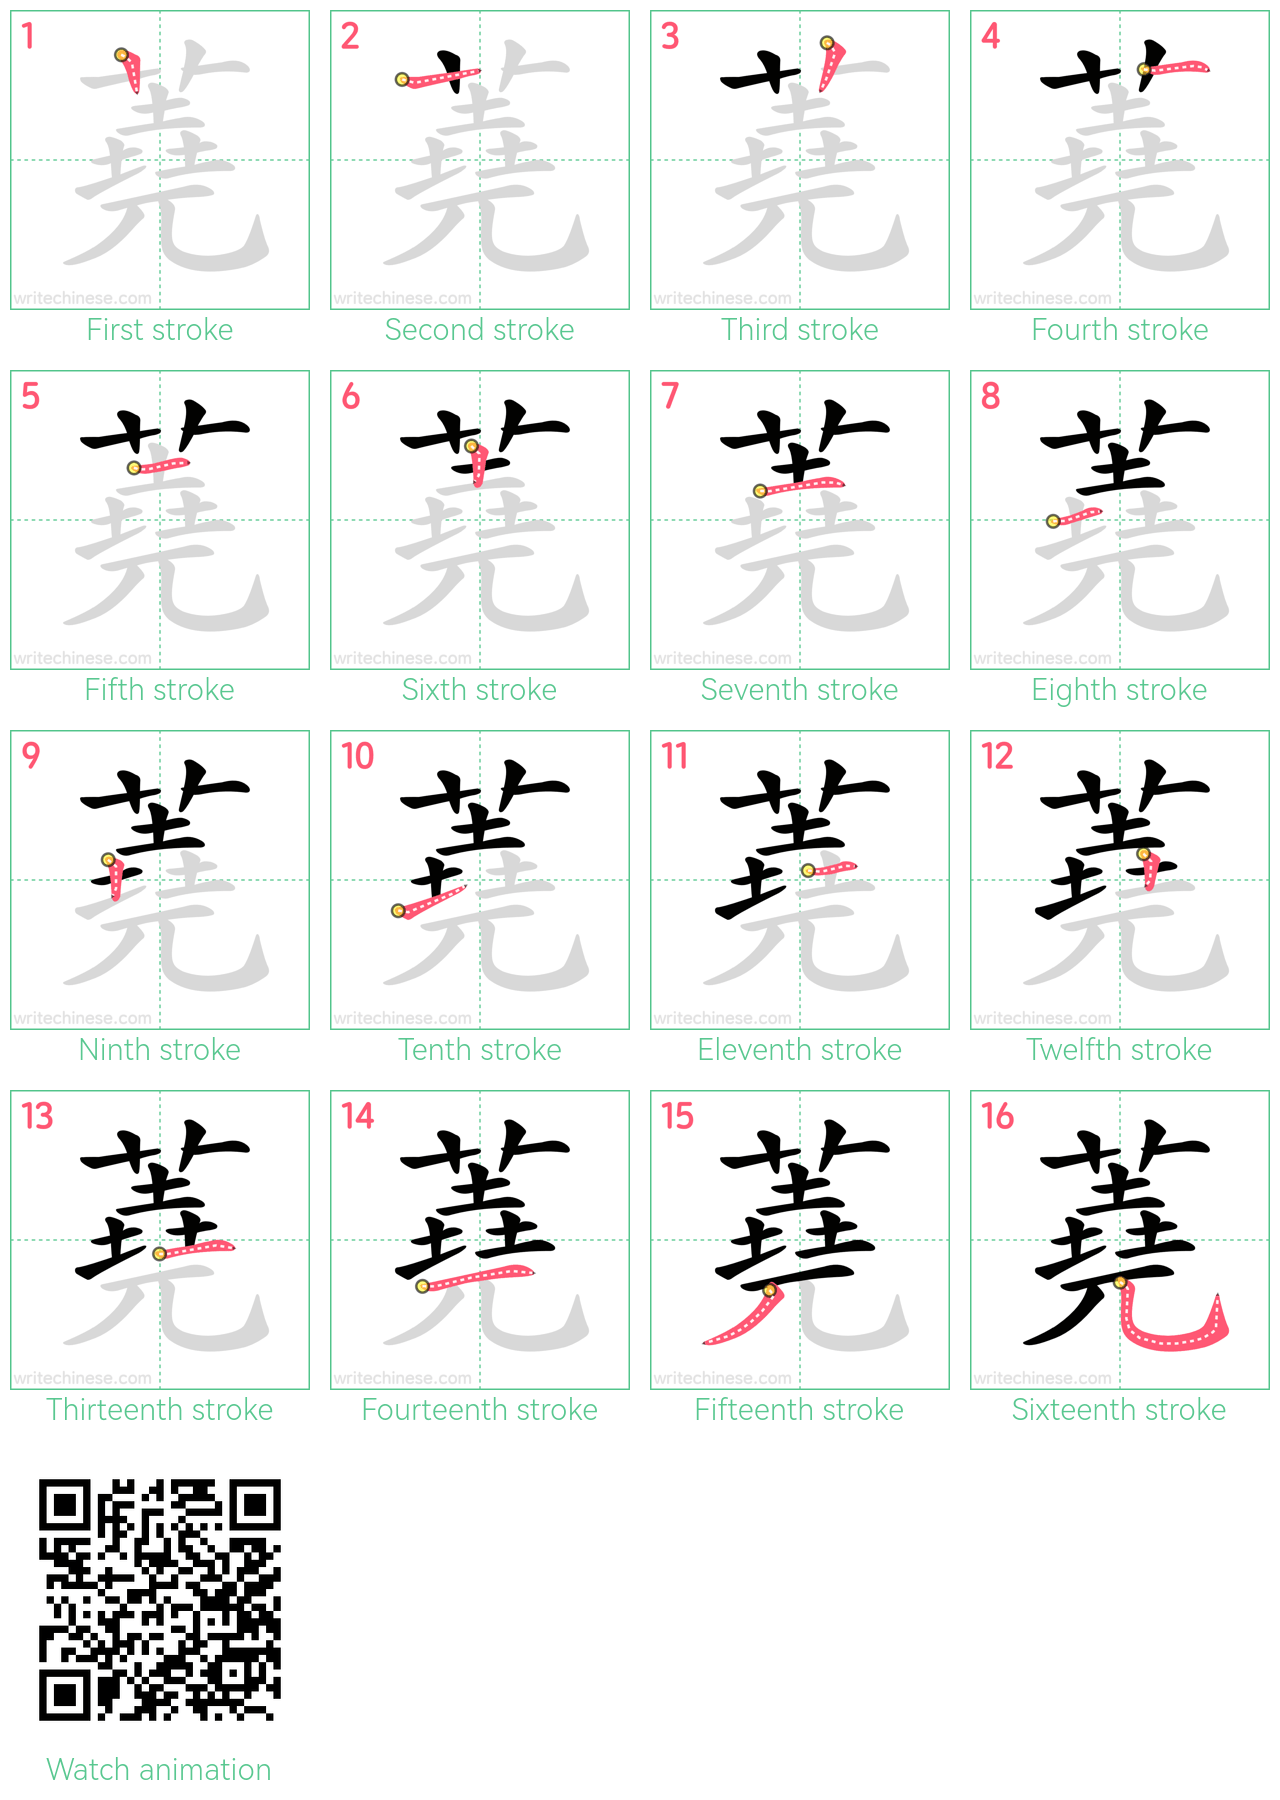 蕘 step-by-step stroke order diagrams